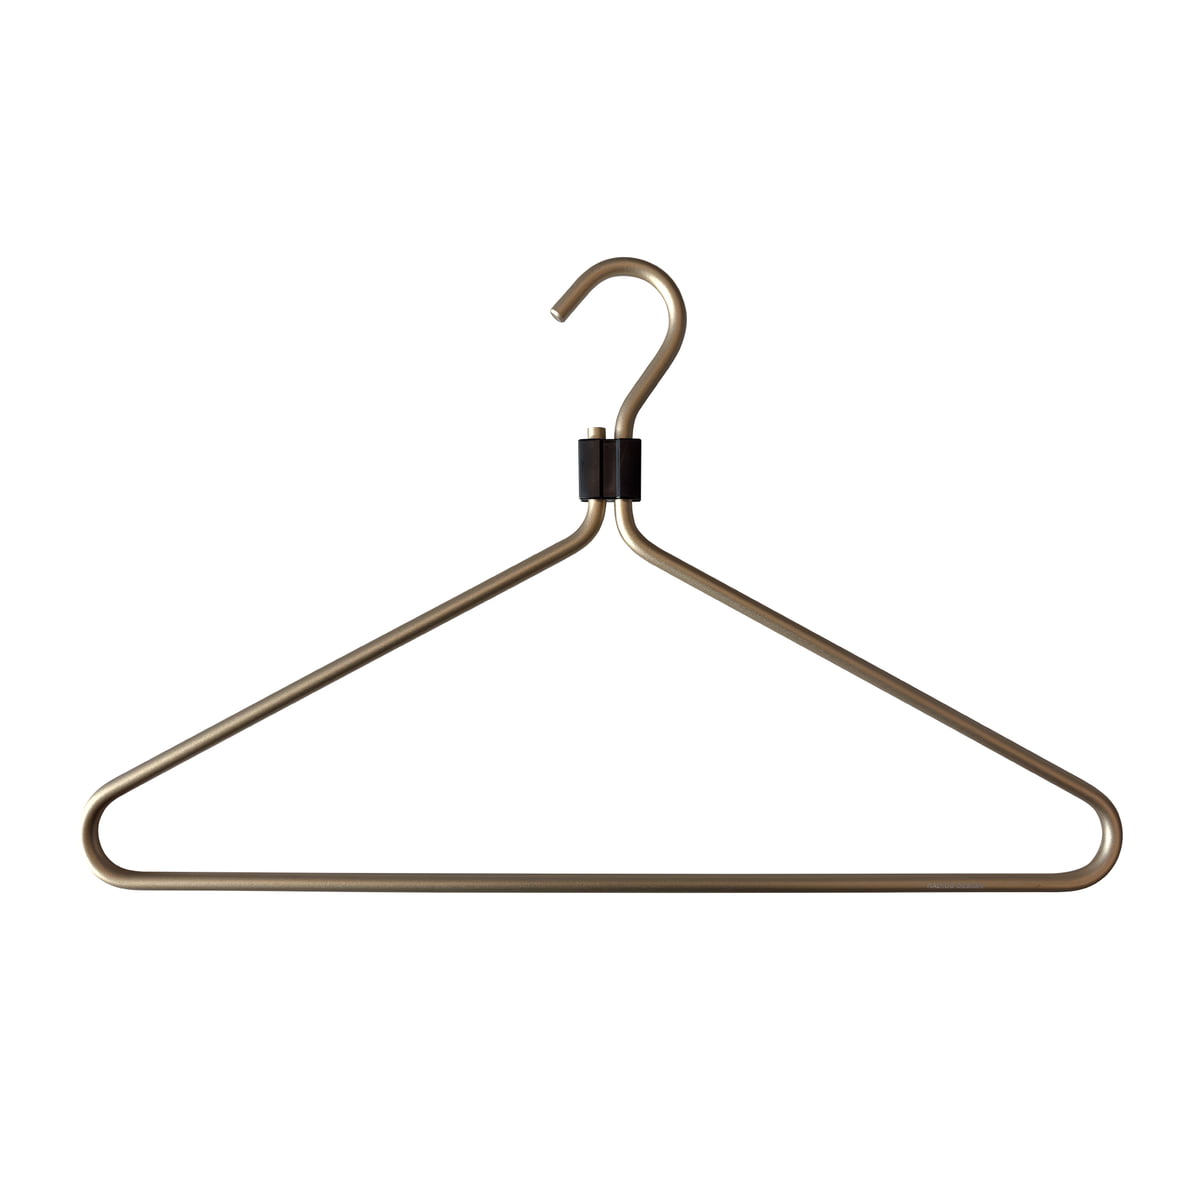 Wire Coat Hangers Set of 5/10/20 Black Clothes Hangers Metal Wire Hangers 